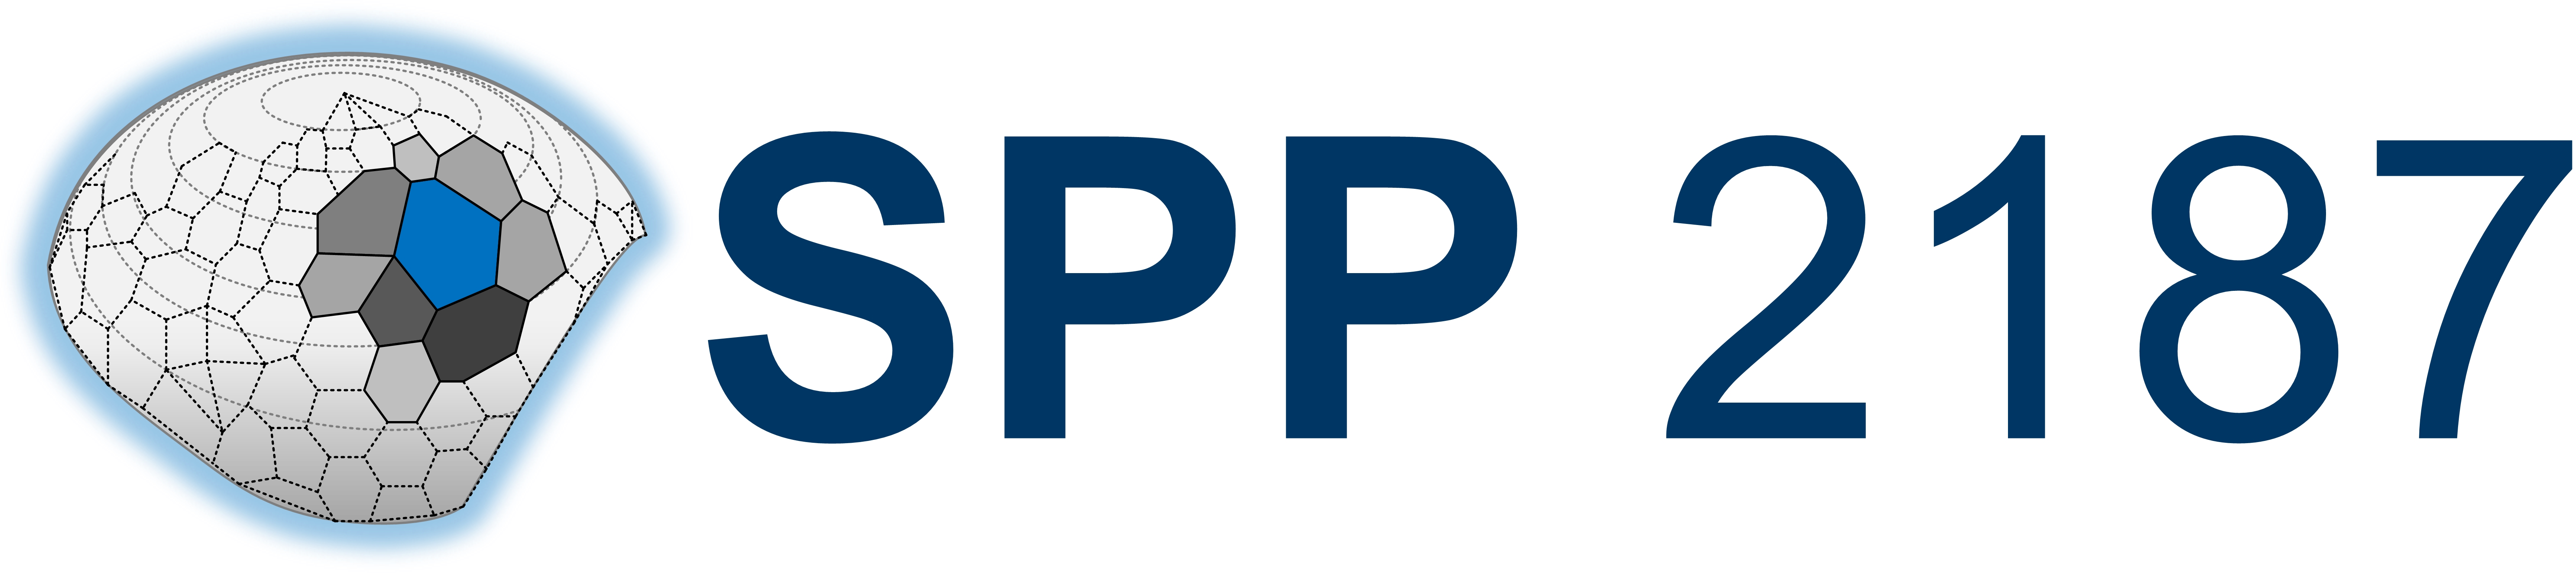 Logo SPP2187